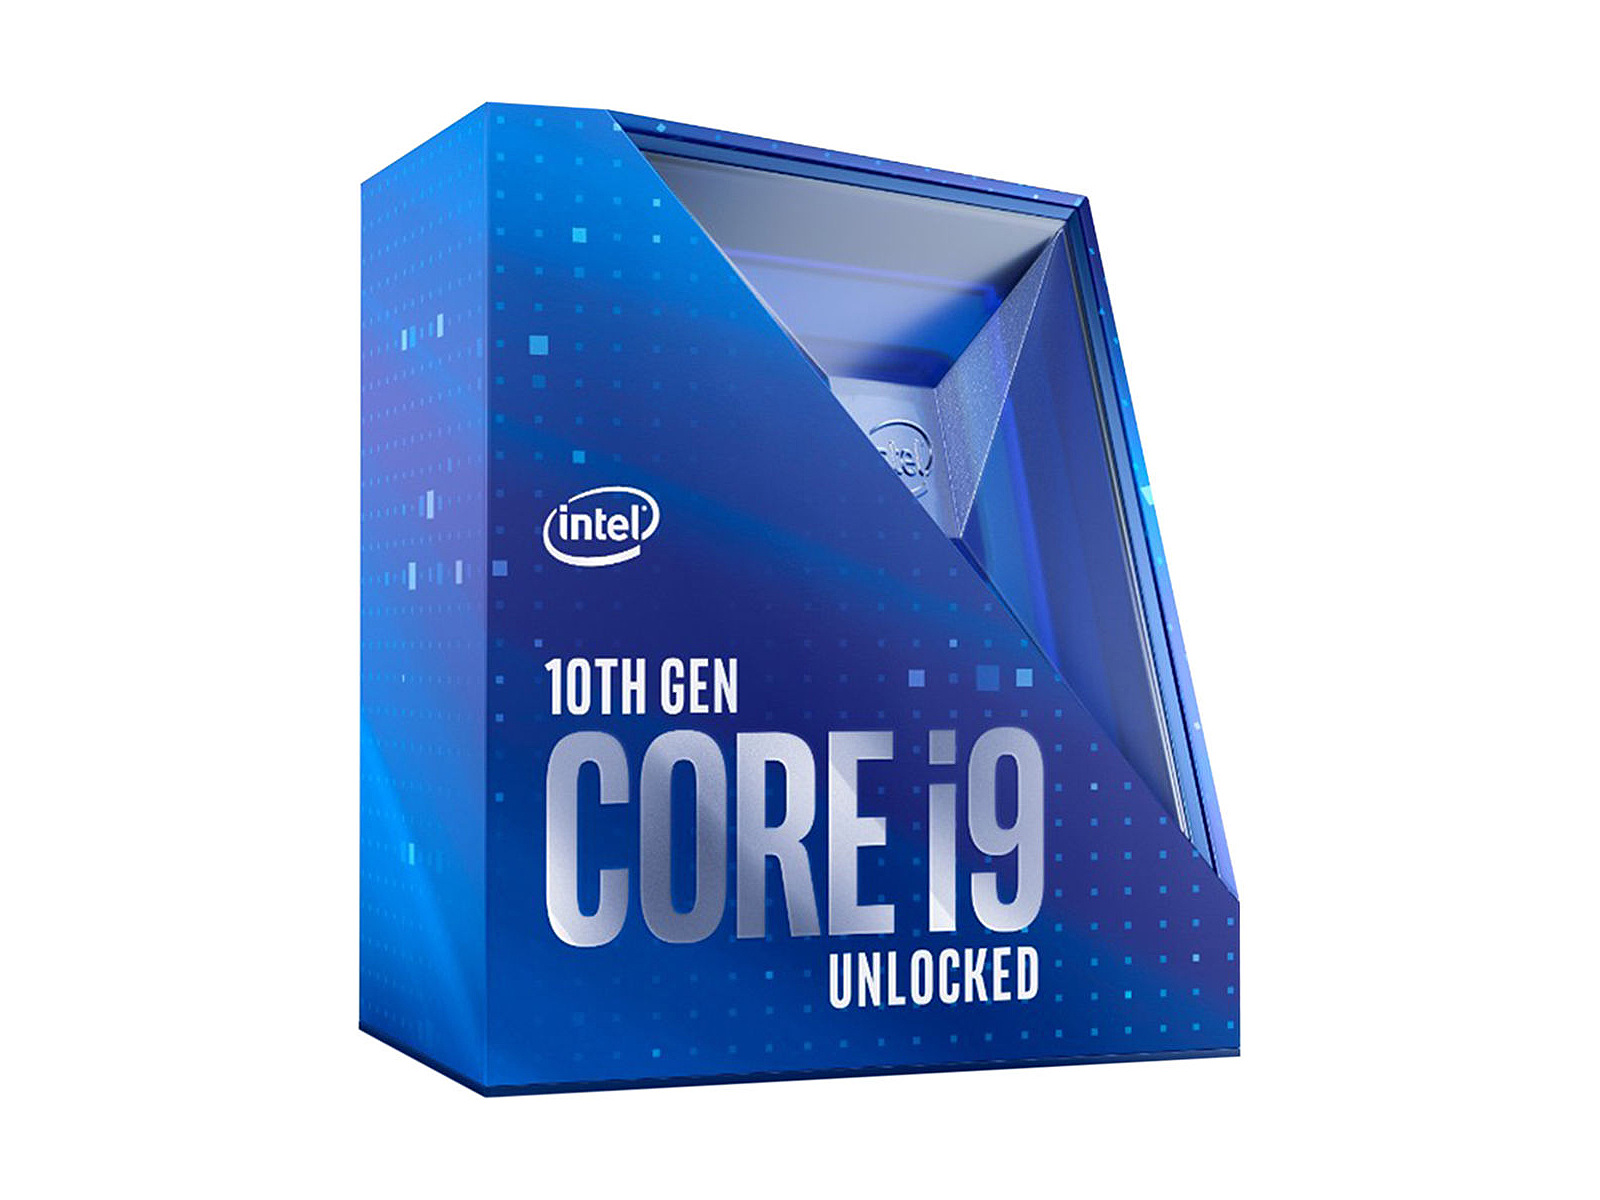 1000px x 1000px - Intel Core i9-10900K (10C/20T, 3.70 GHz, 20MB Cache, LGA1200, 125W)  (BX8070110900K)